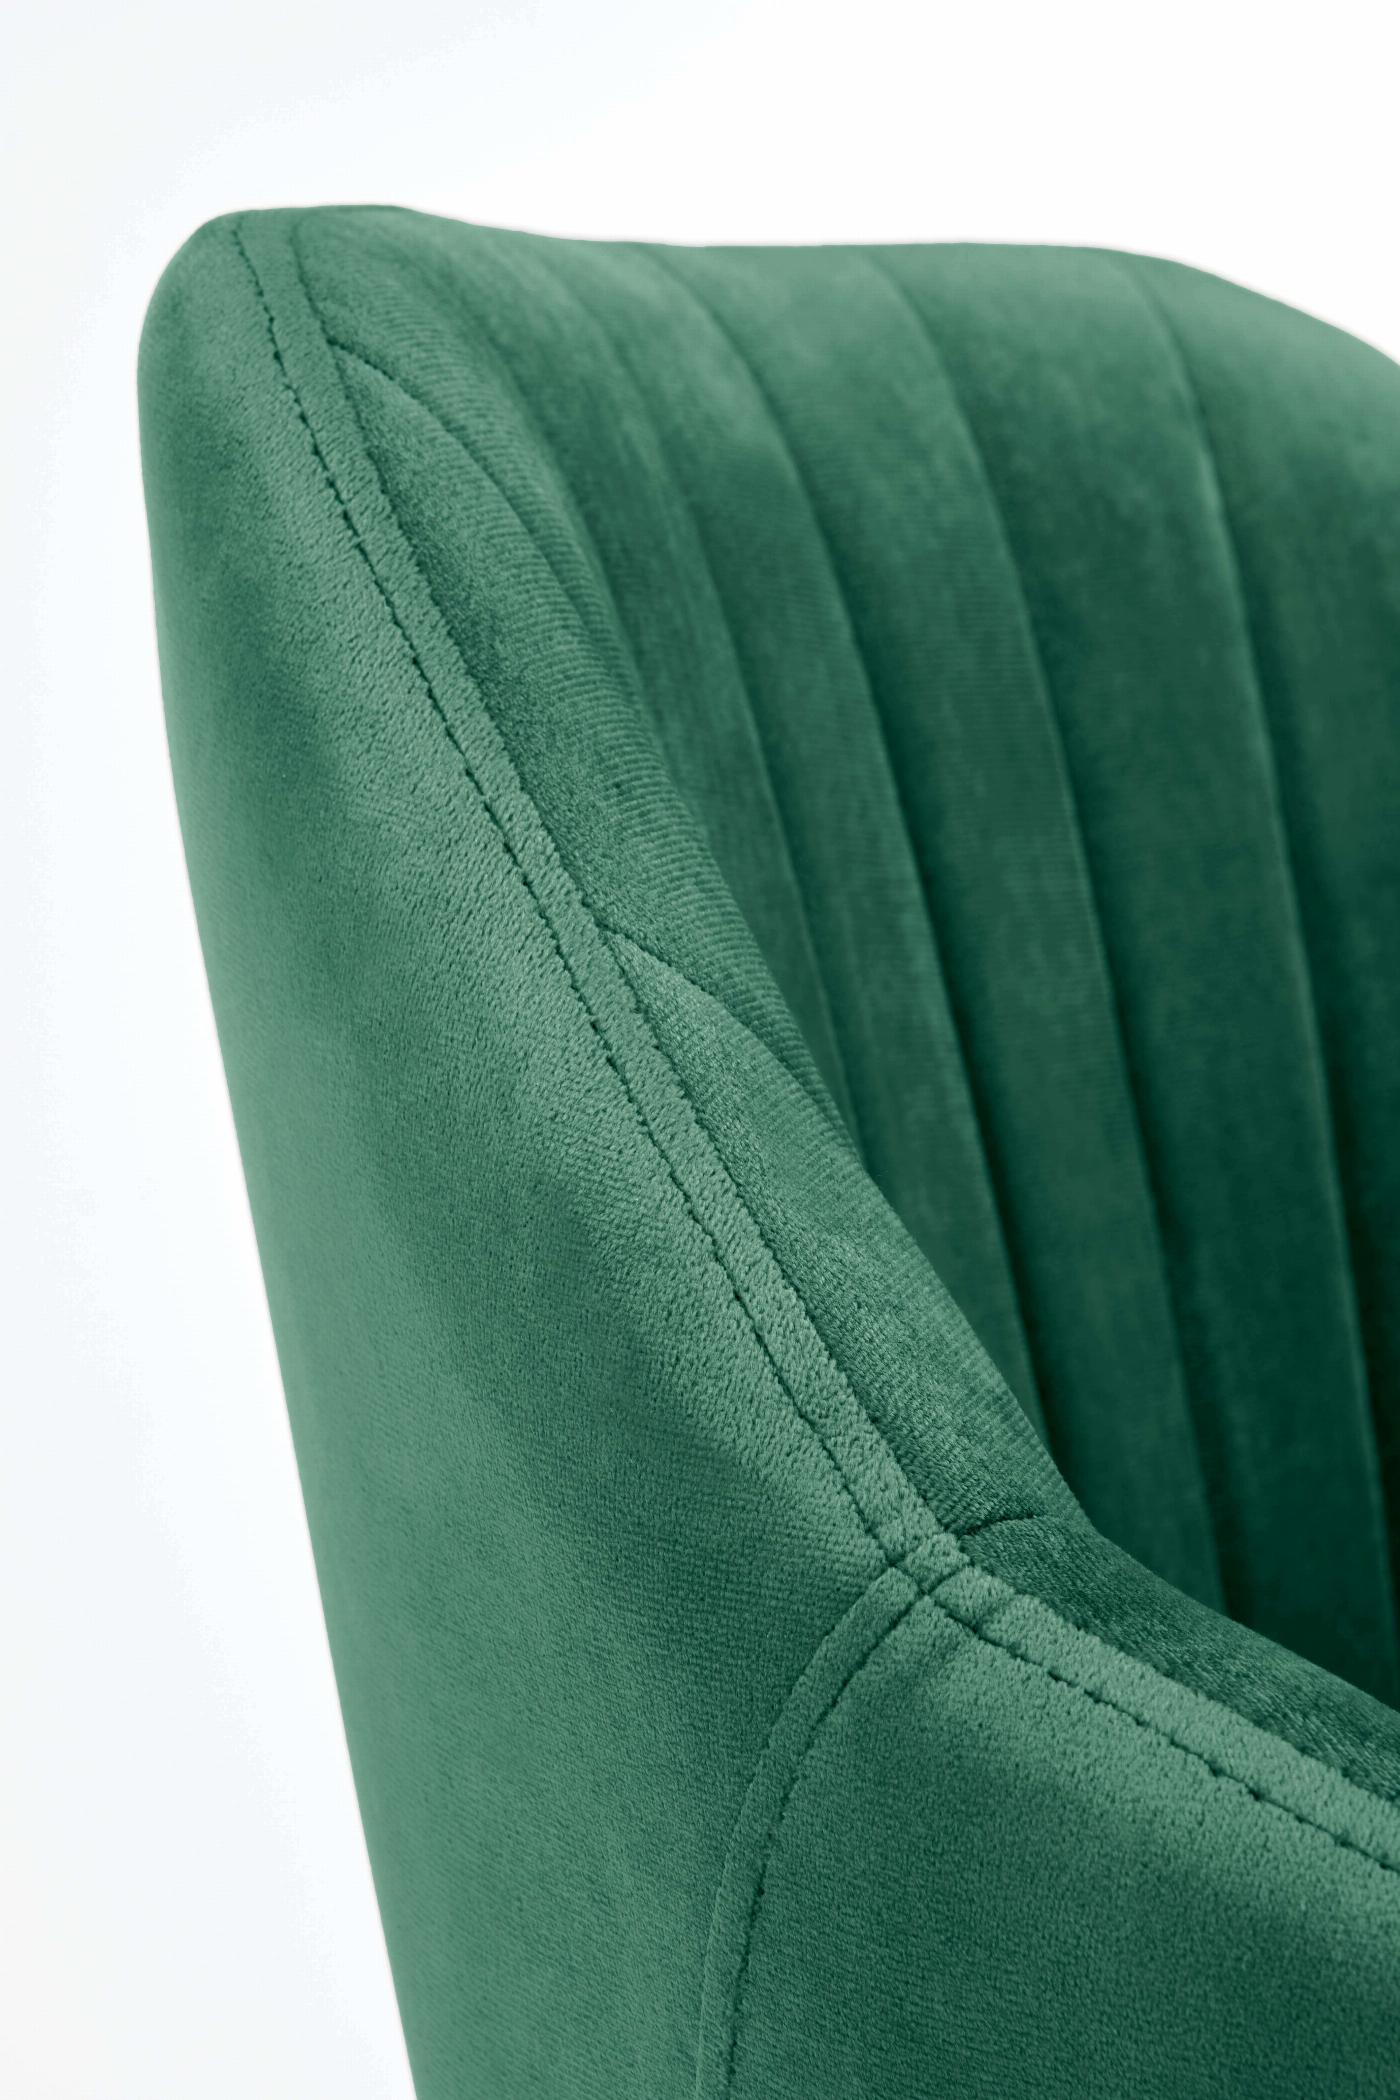 FRESCO fotel młodzieżowy ciemny zielony velvet